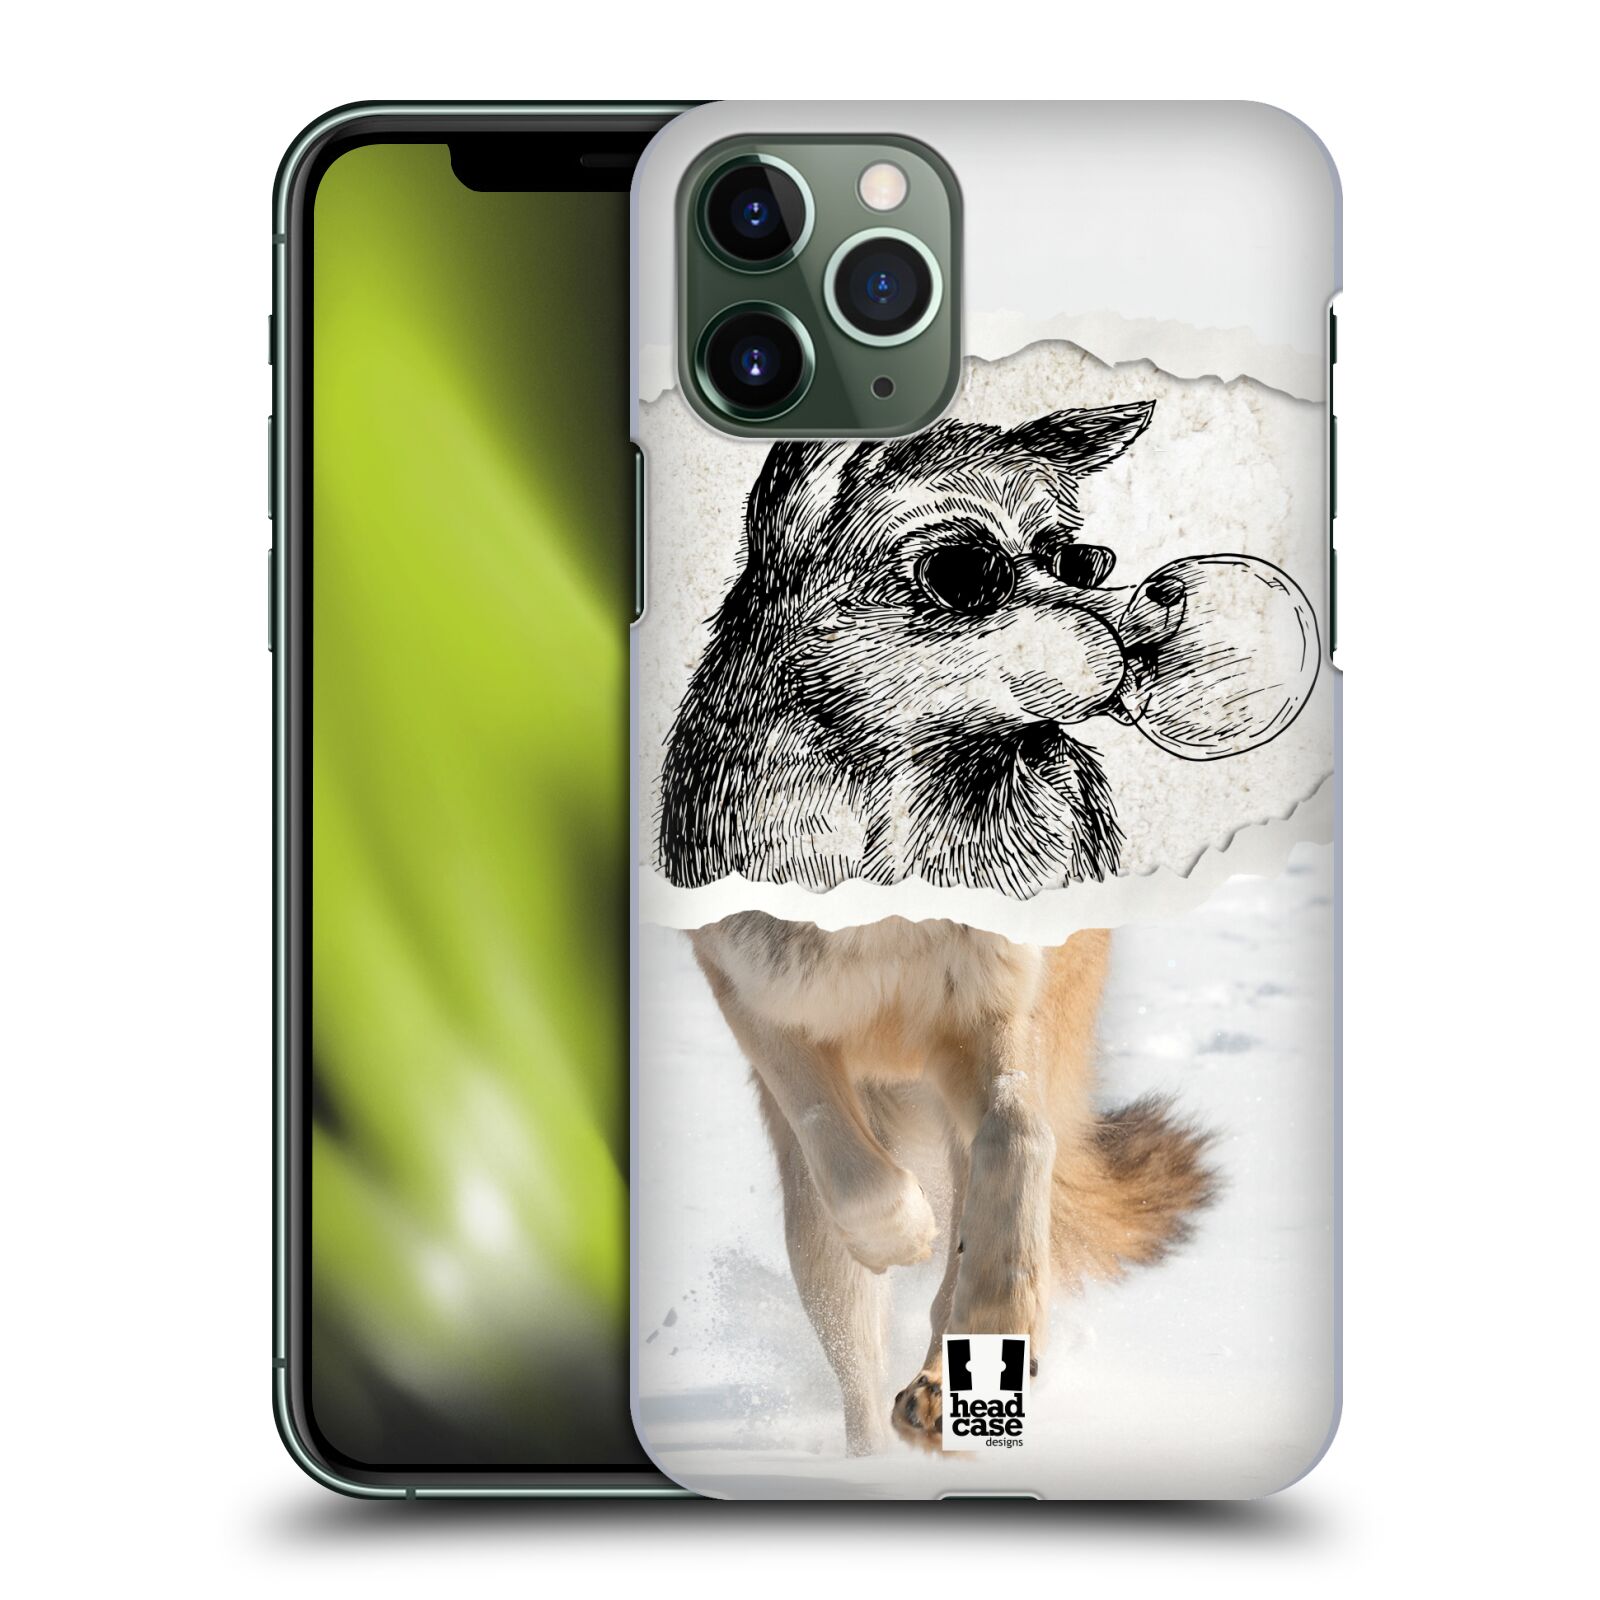 Pouzdro na mobil Apple Iphone 11 PRO - HEAD CASE - vzor zvířata koláž vlk pohodář